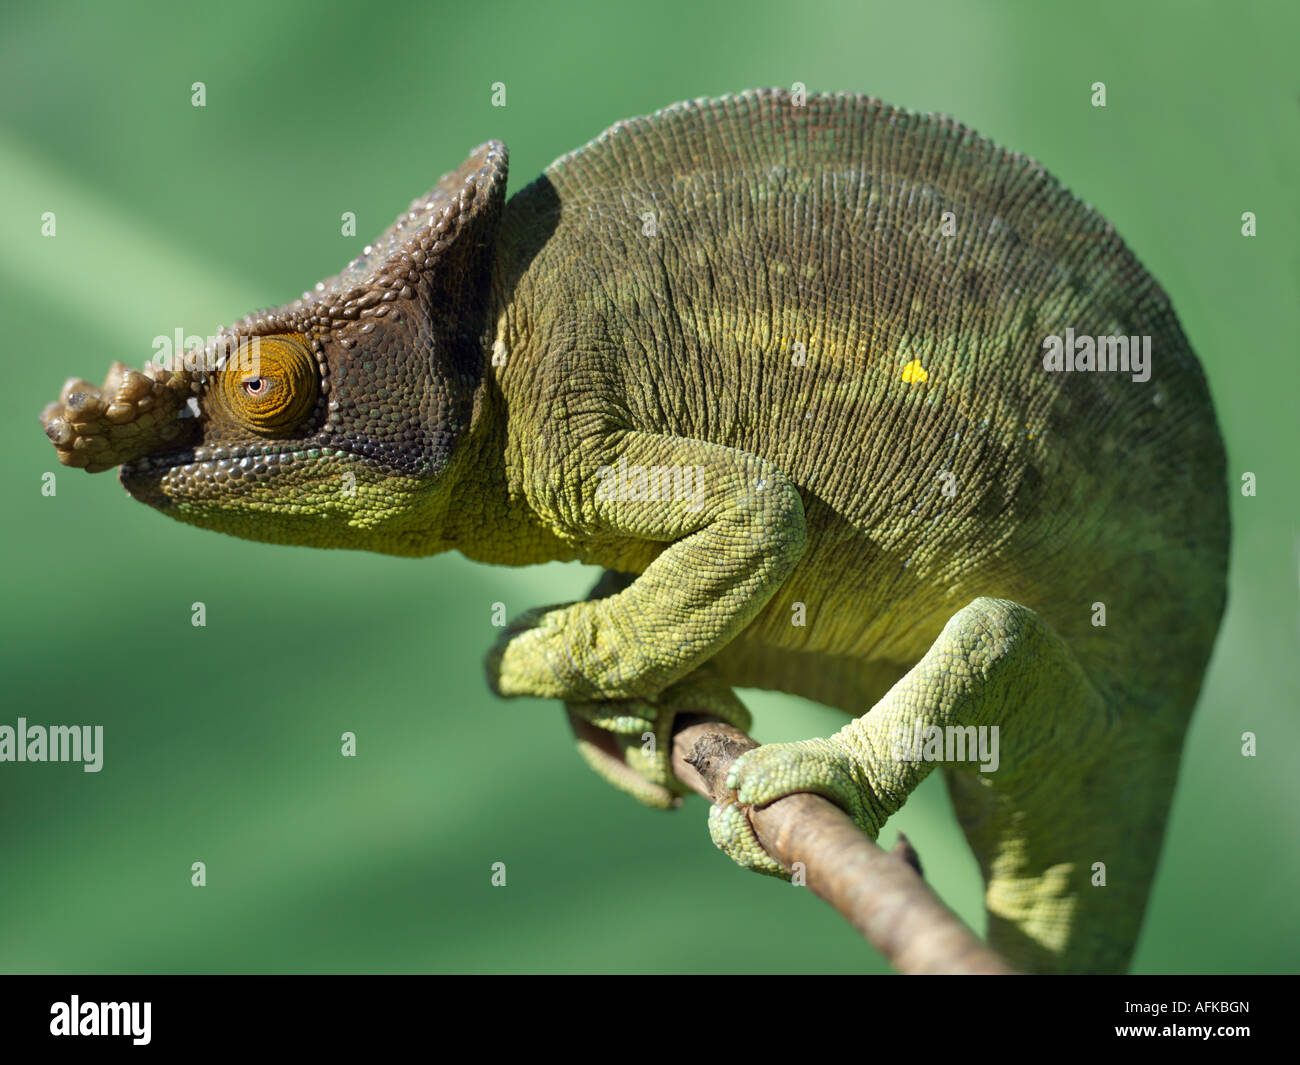 A Parson's chameleon (Chamaeleo parsonii). Stock Photo